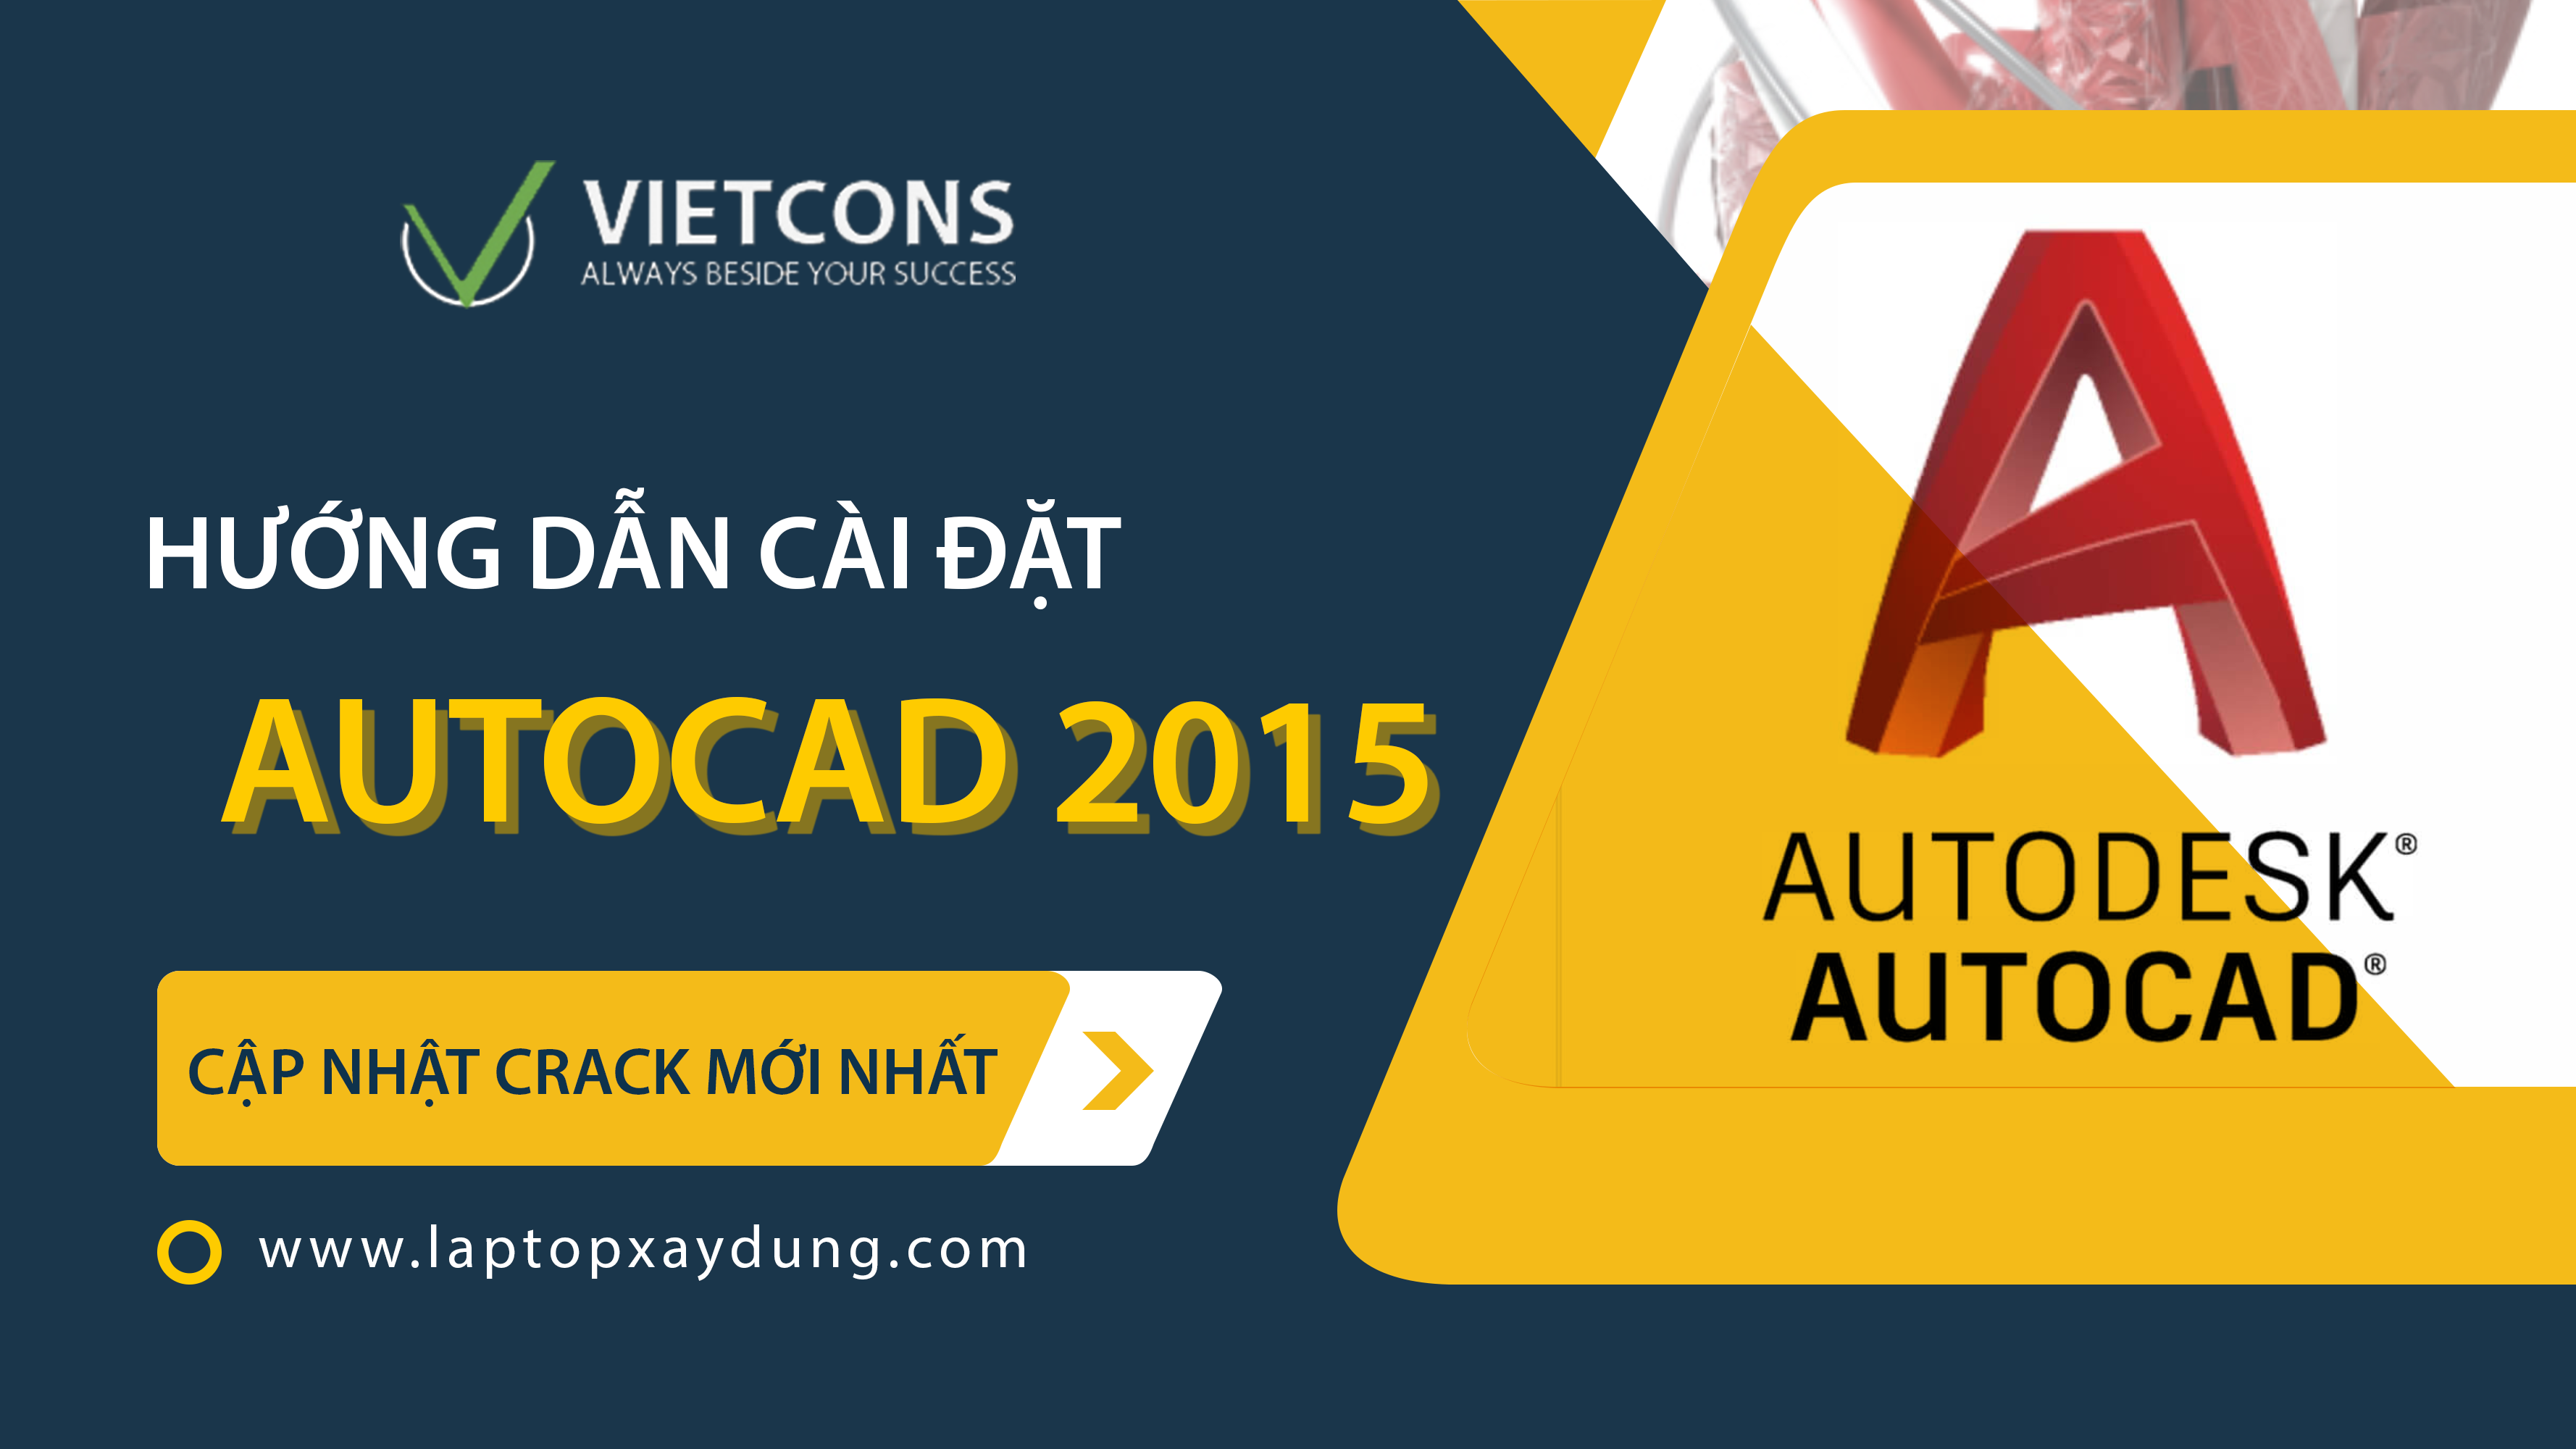 download autocad 2015 64bit full crack sinhvienit